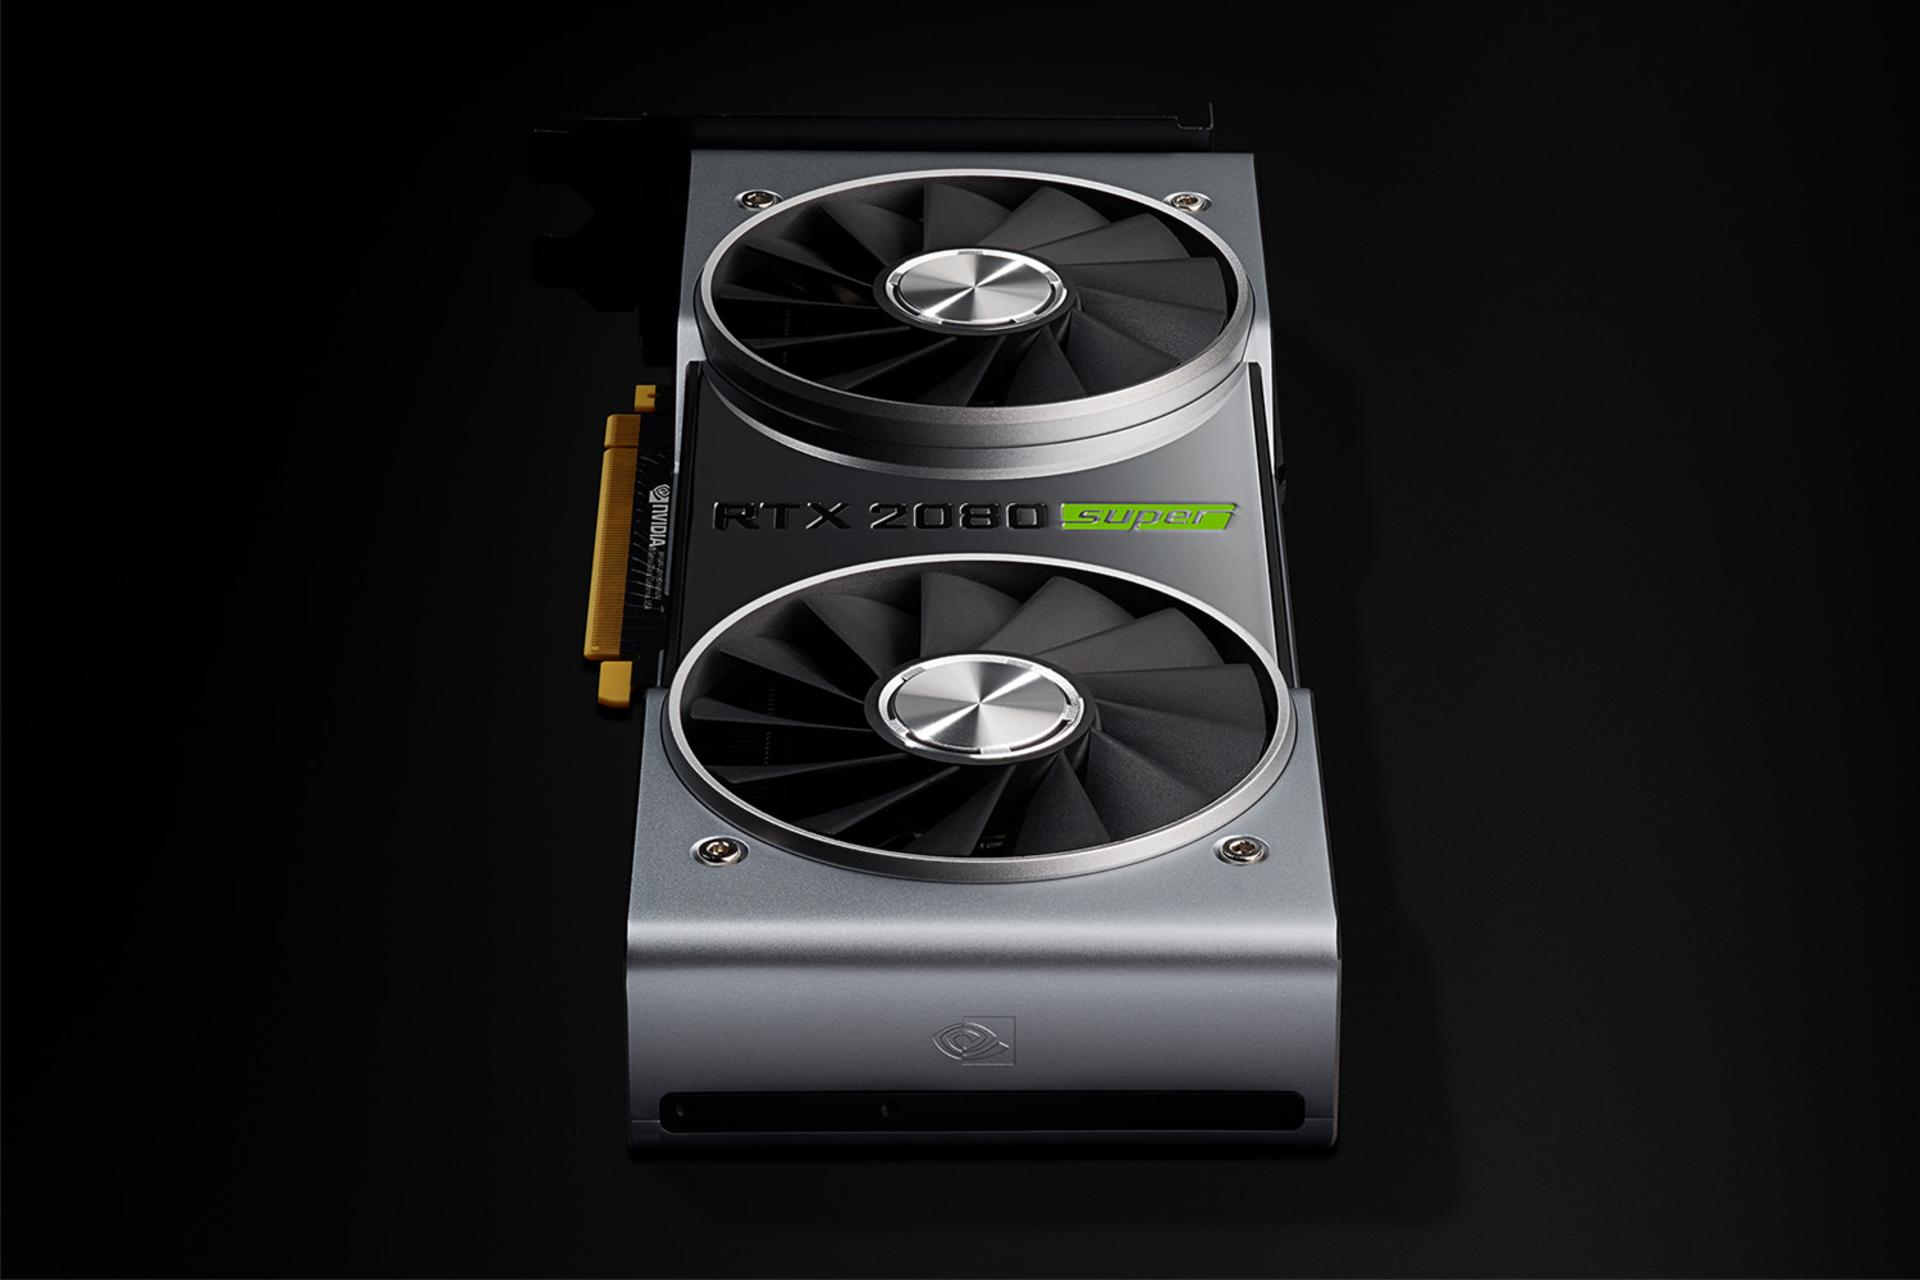 مرجع متخصصين ايران Nvidia GeForce RTX 2080 SUPER / انويديا جي فورس ۲۰۸۰ سوپر